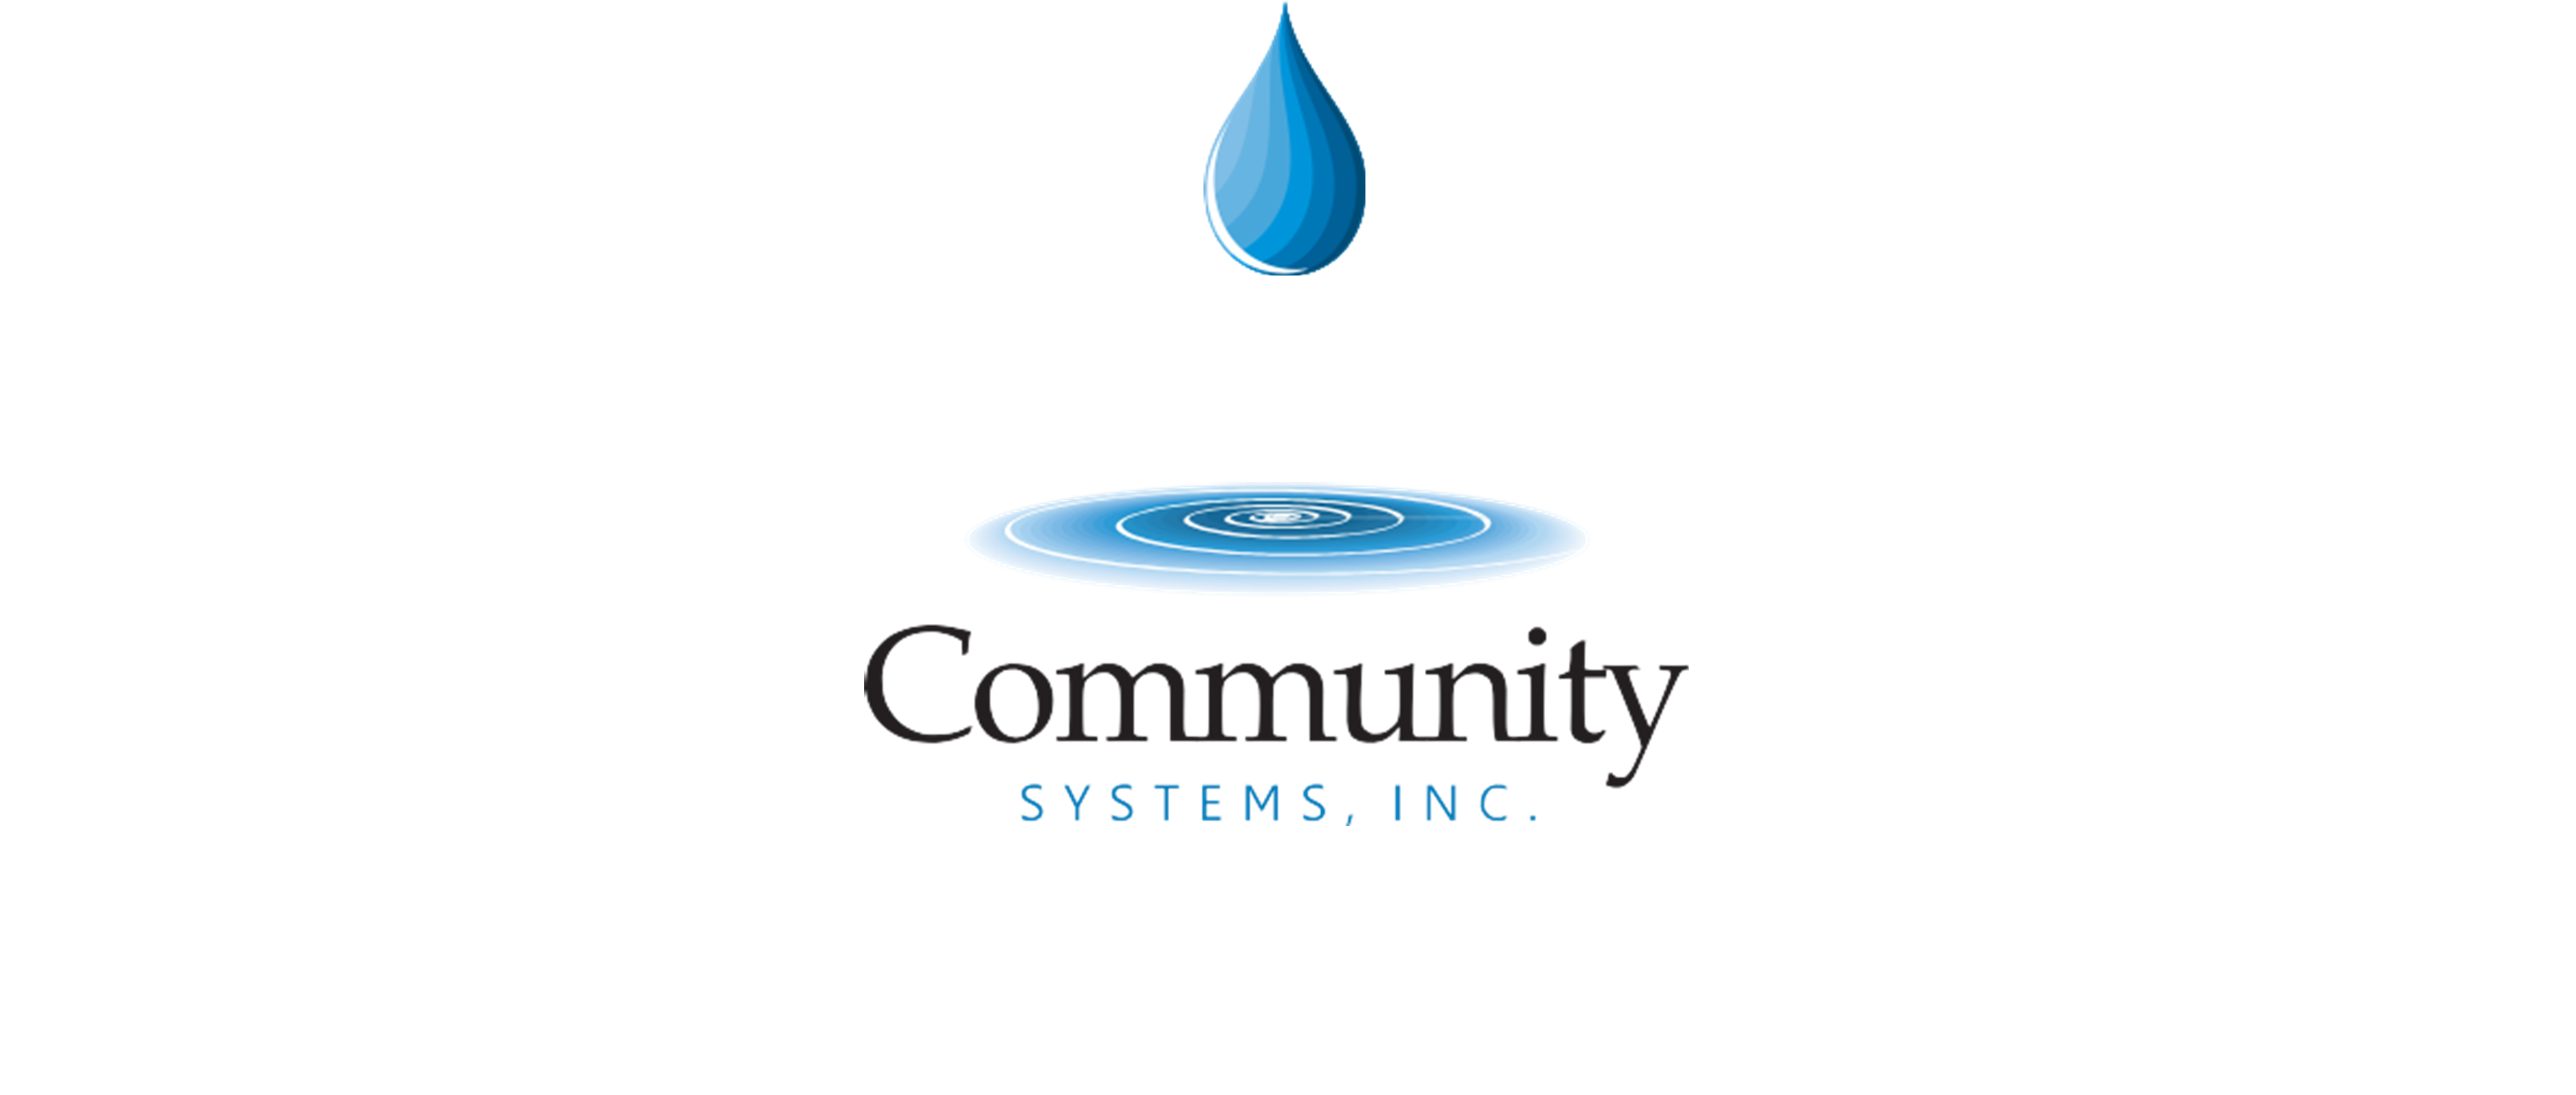 Community Systems Inc Company Logo